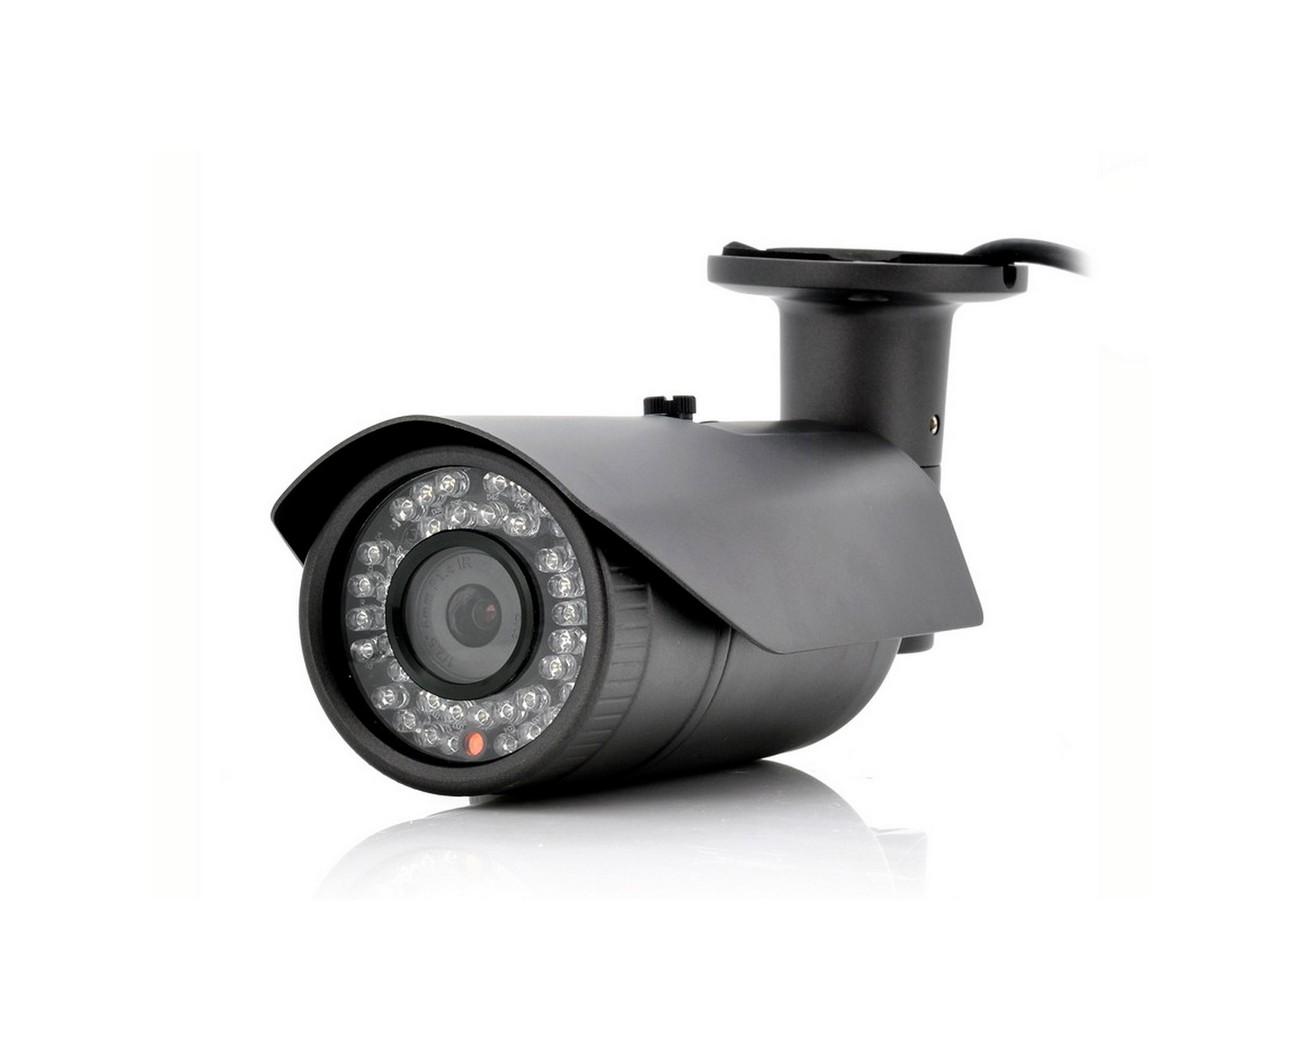 Уличная проводная AHD камера KaDyMay 156-2 160921537 уличная ная проводная камера видеонаблюдения с 2х кратным zoom kdm 6215g 16092125